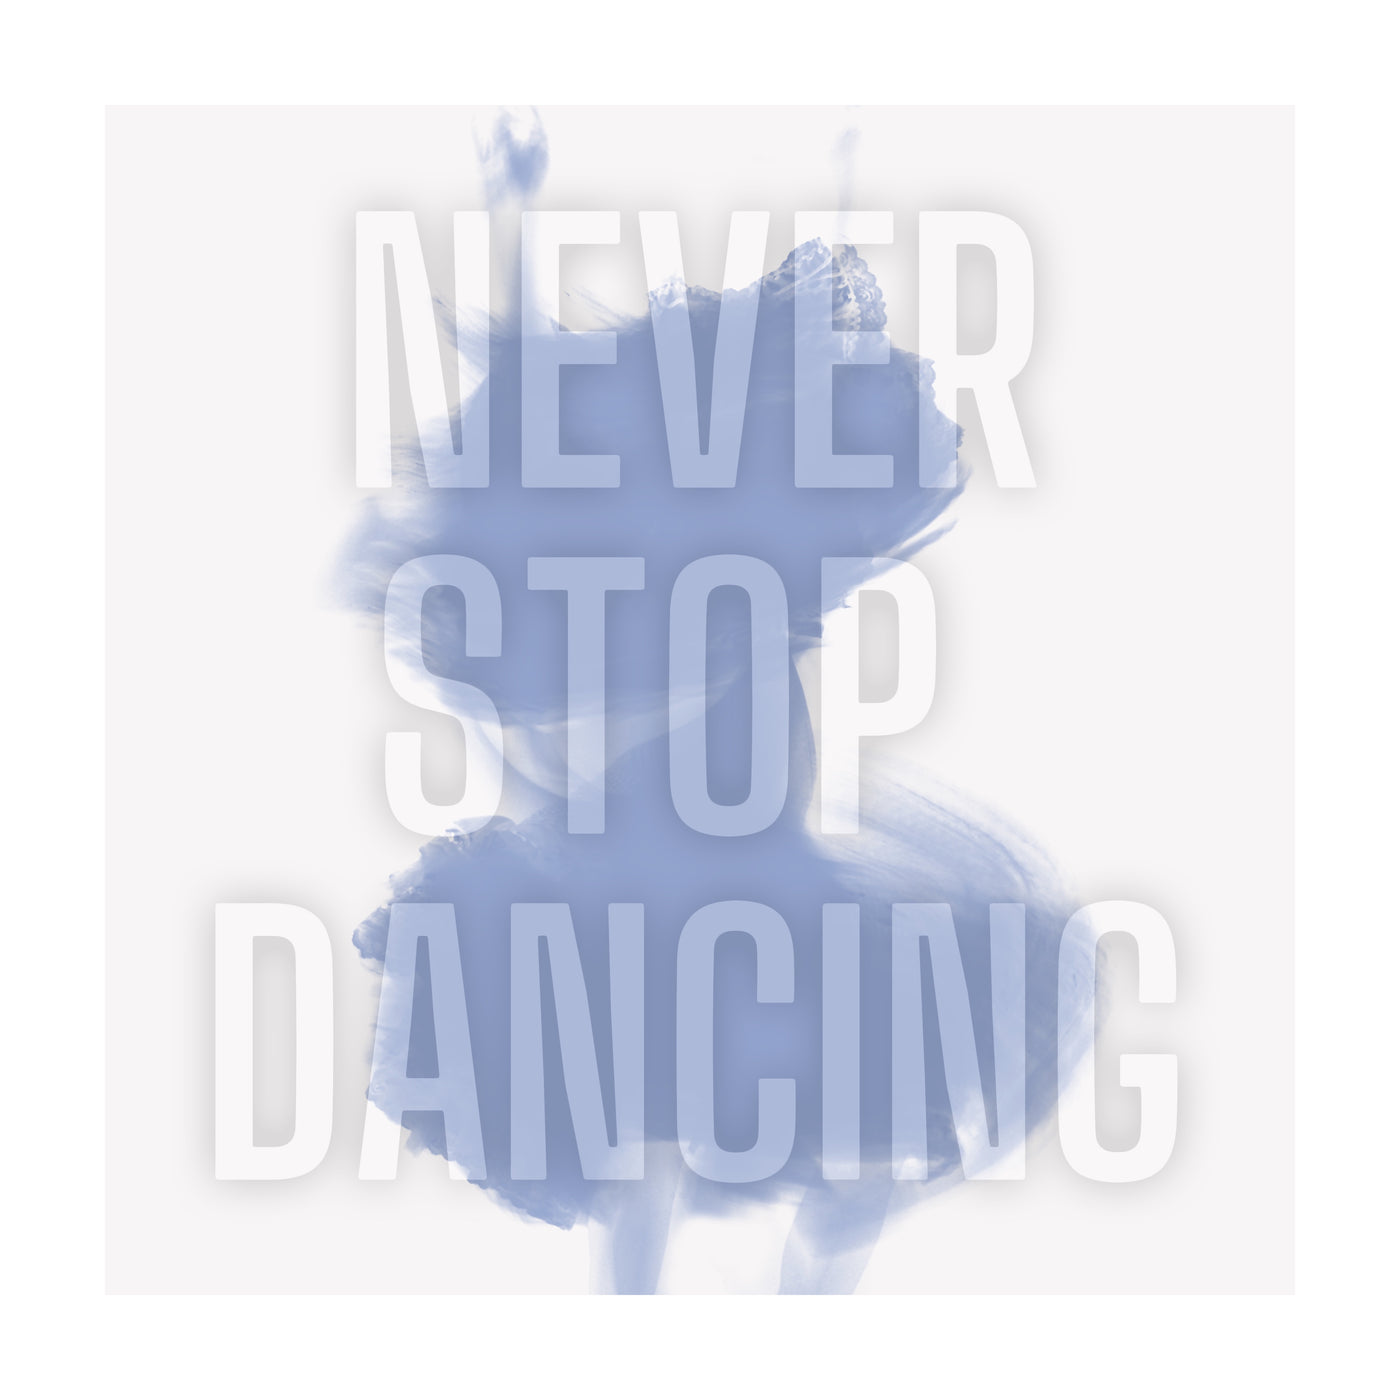 Never Stop Dancing